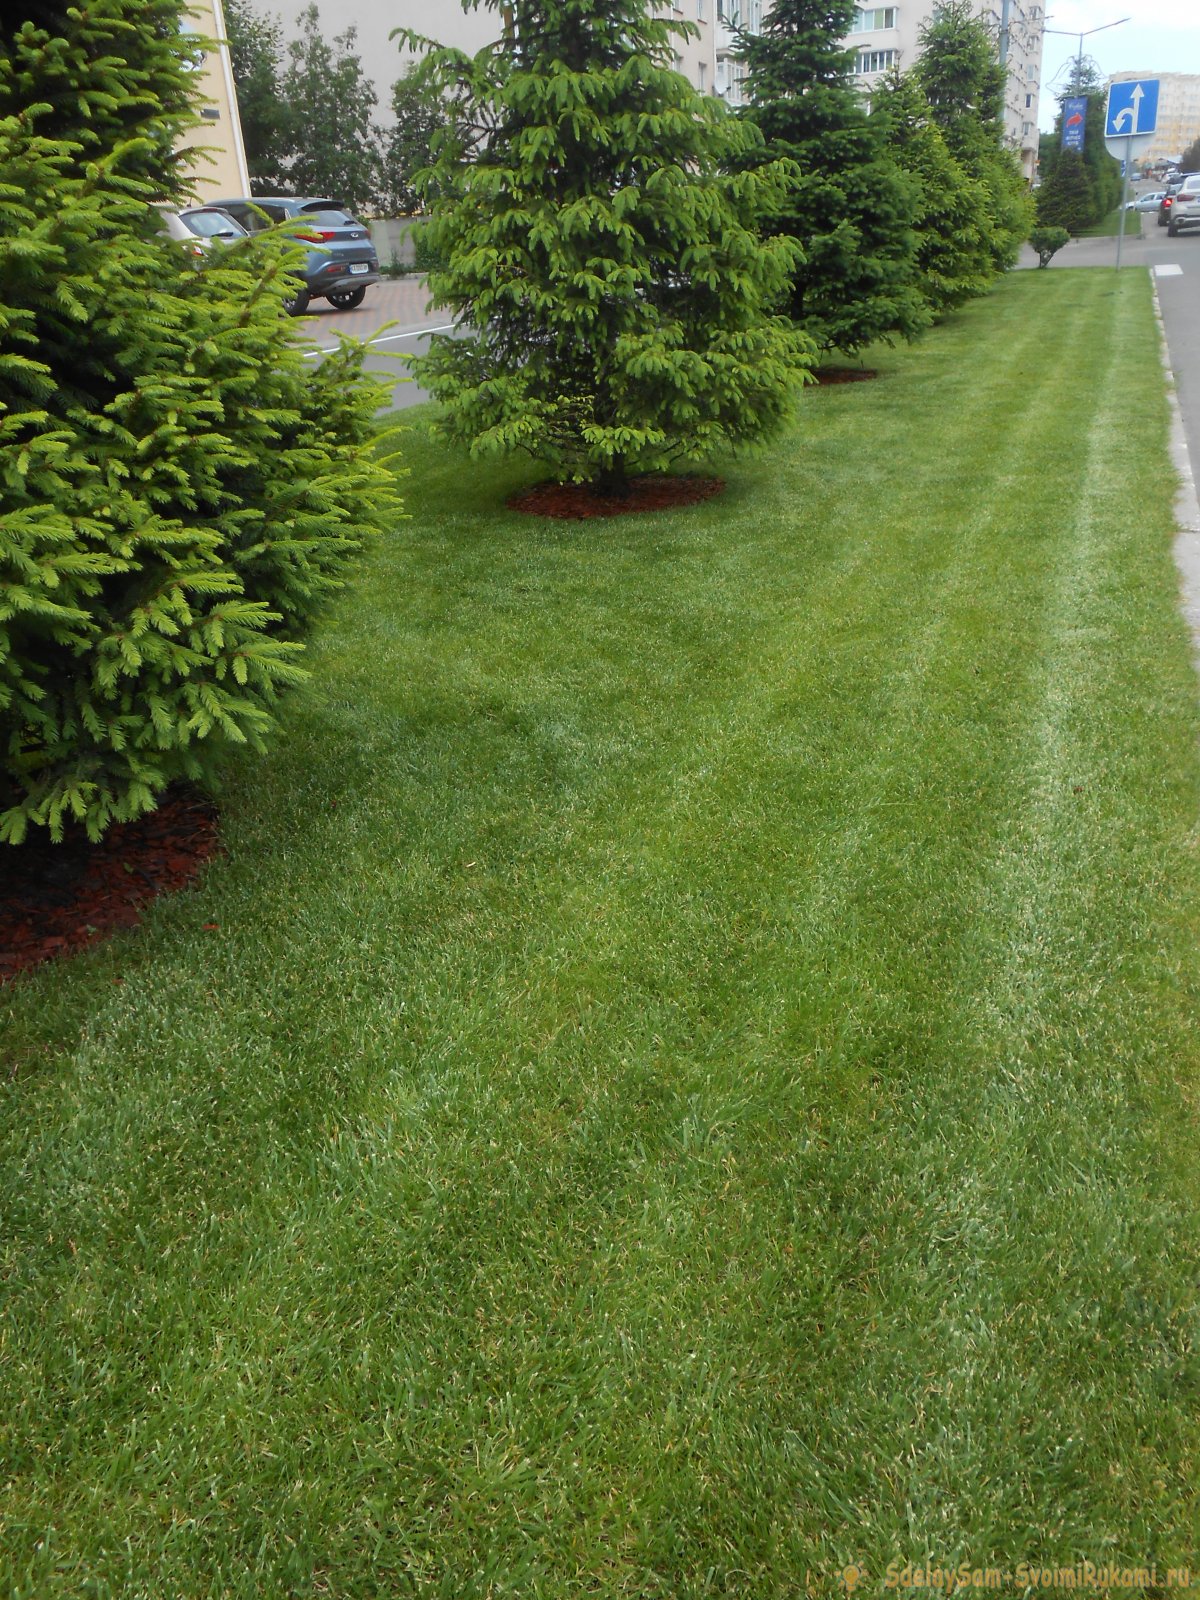 Ваш газон будет как в кино, если делать правильный уход: стрижка, подкормка, аэрация